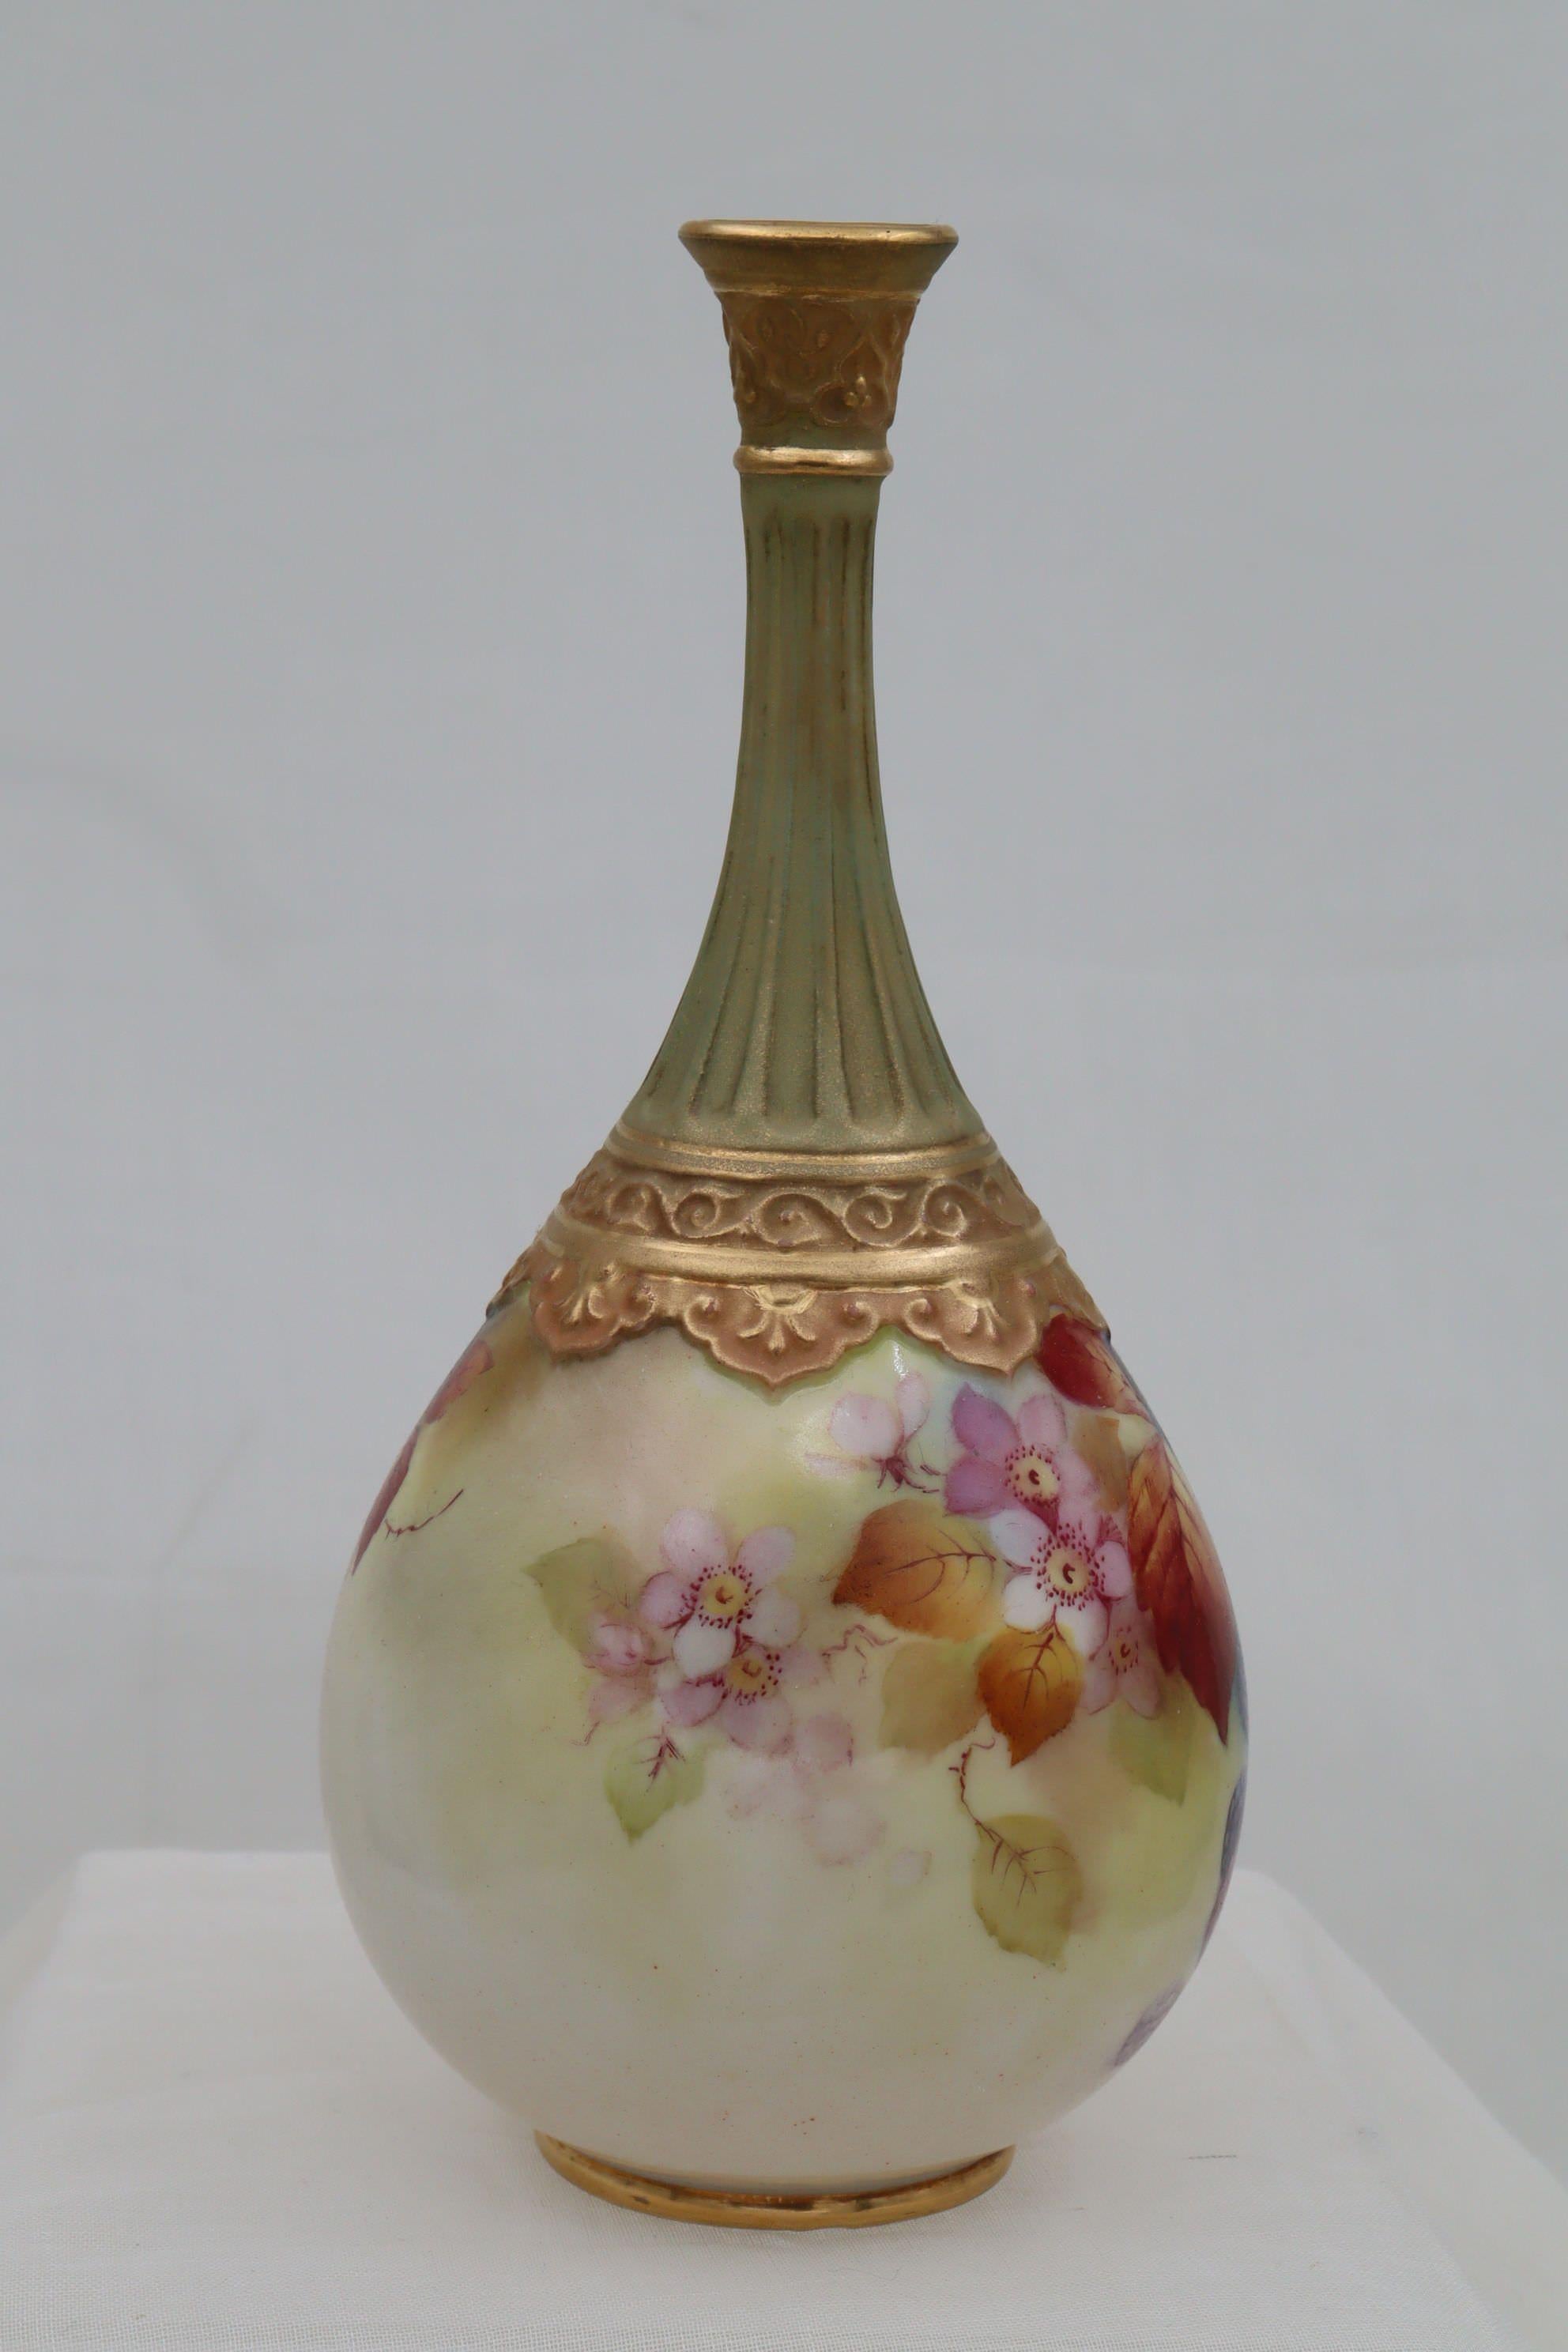 Ce vase Royal Worcester en forme de poire avec des montures décoratives en or a été peint à la main par Kitty Blake, avec son motif caractéristique de mûres et de feuilles d'automne.  Kitty Blake a travaillé à l'usine Royal Worcester pendant 48 ans,